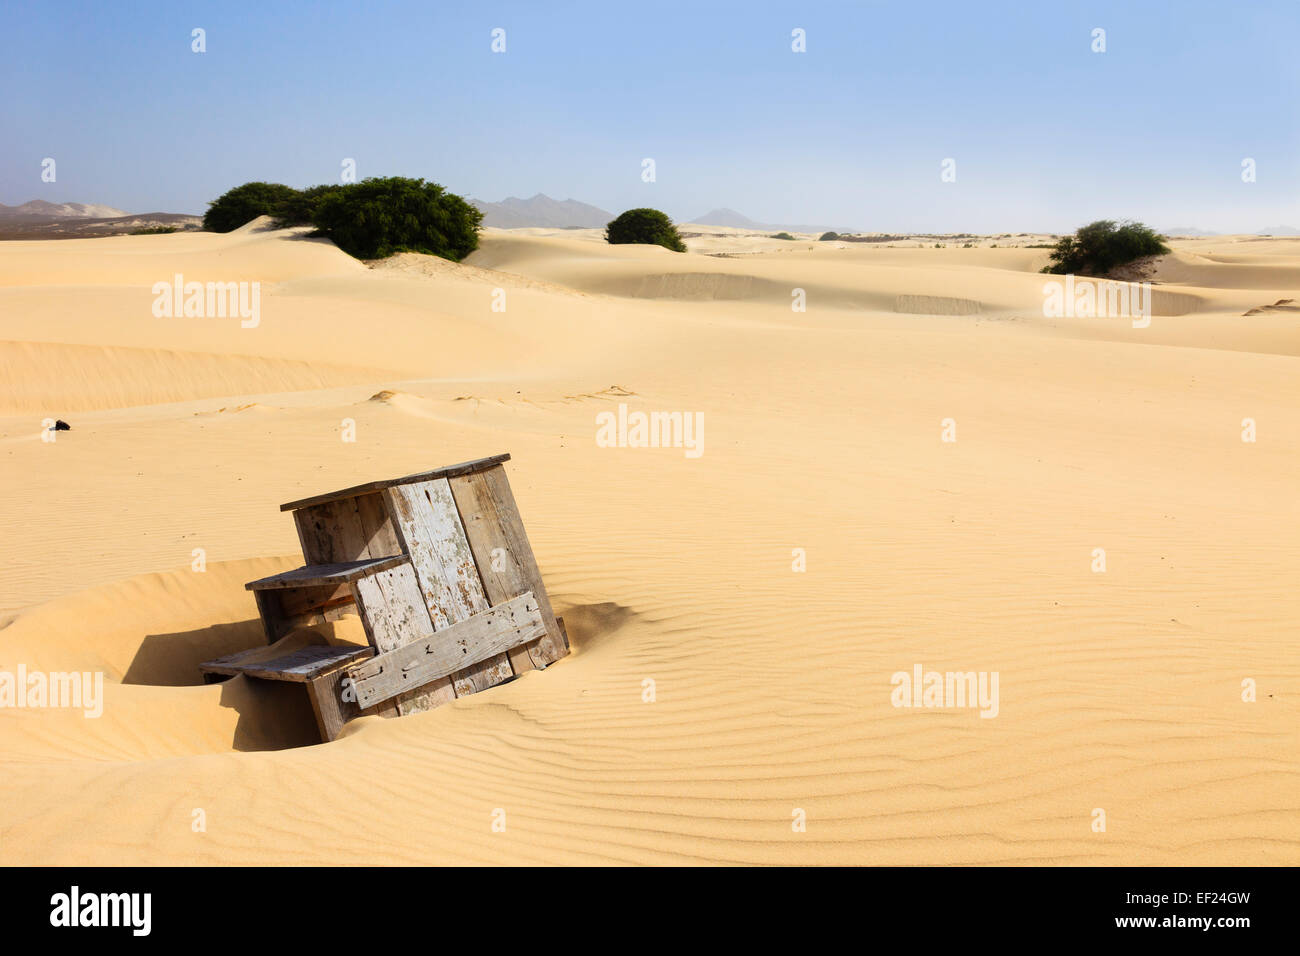 Holz- Schritte in eine große trockene Landschaft Weite des leeren Wüste Sand aufgegeben. Deserto de Viana, Boa Vista, Kap Verde Inseln, Afrika. Stockfoto